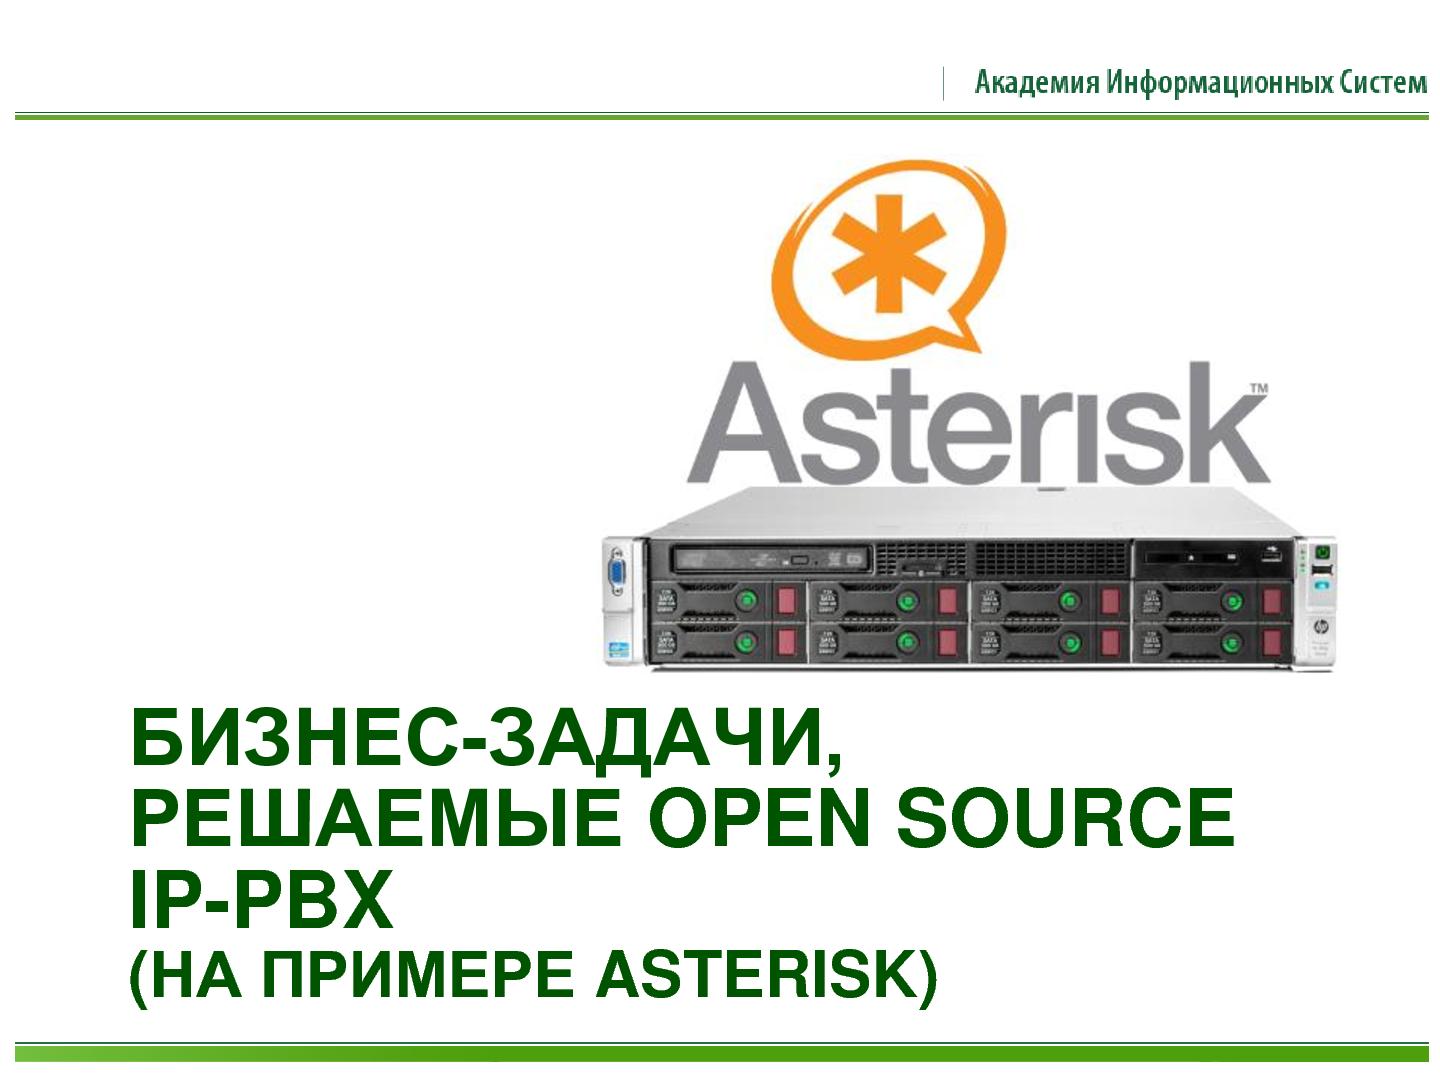 Файл:Открытые программные платформы для построения систем IP-телефонии (Сергей Грушко, ROSS-2013).pdf